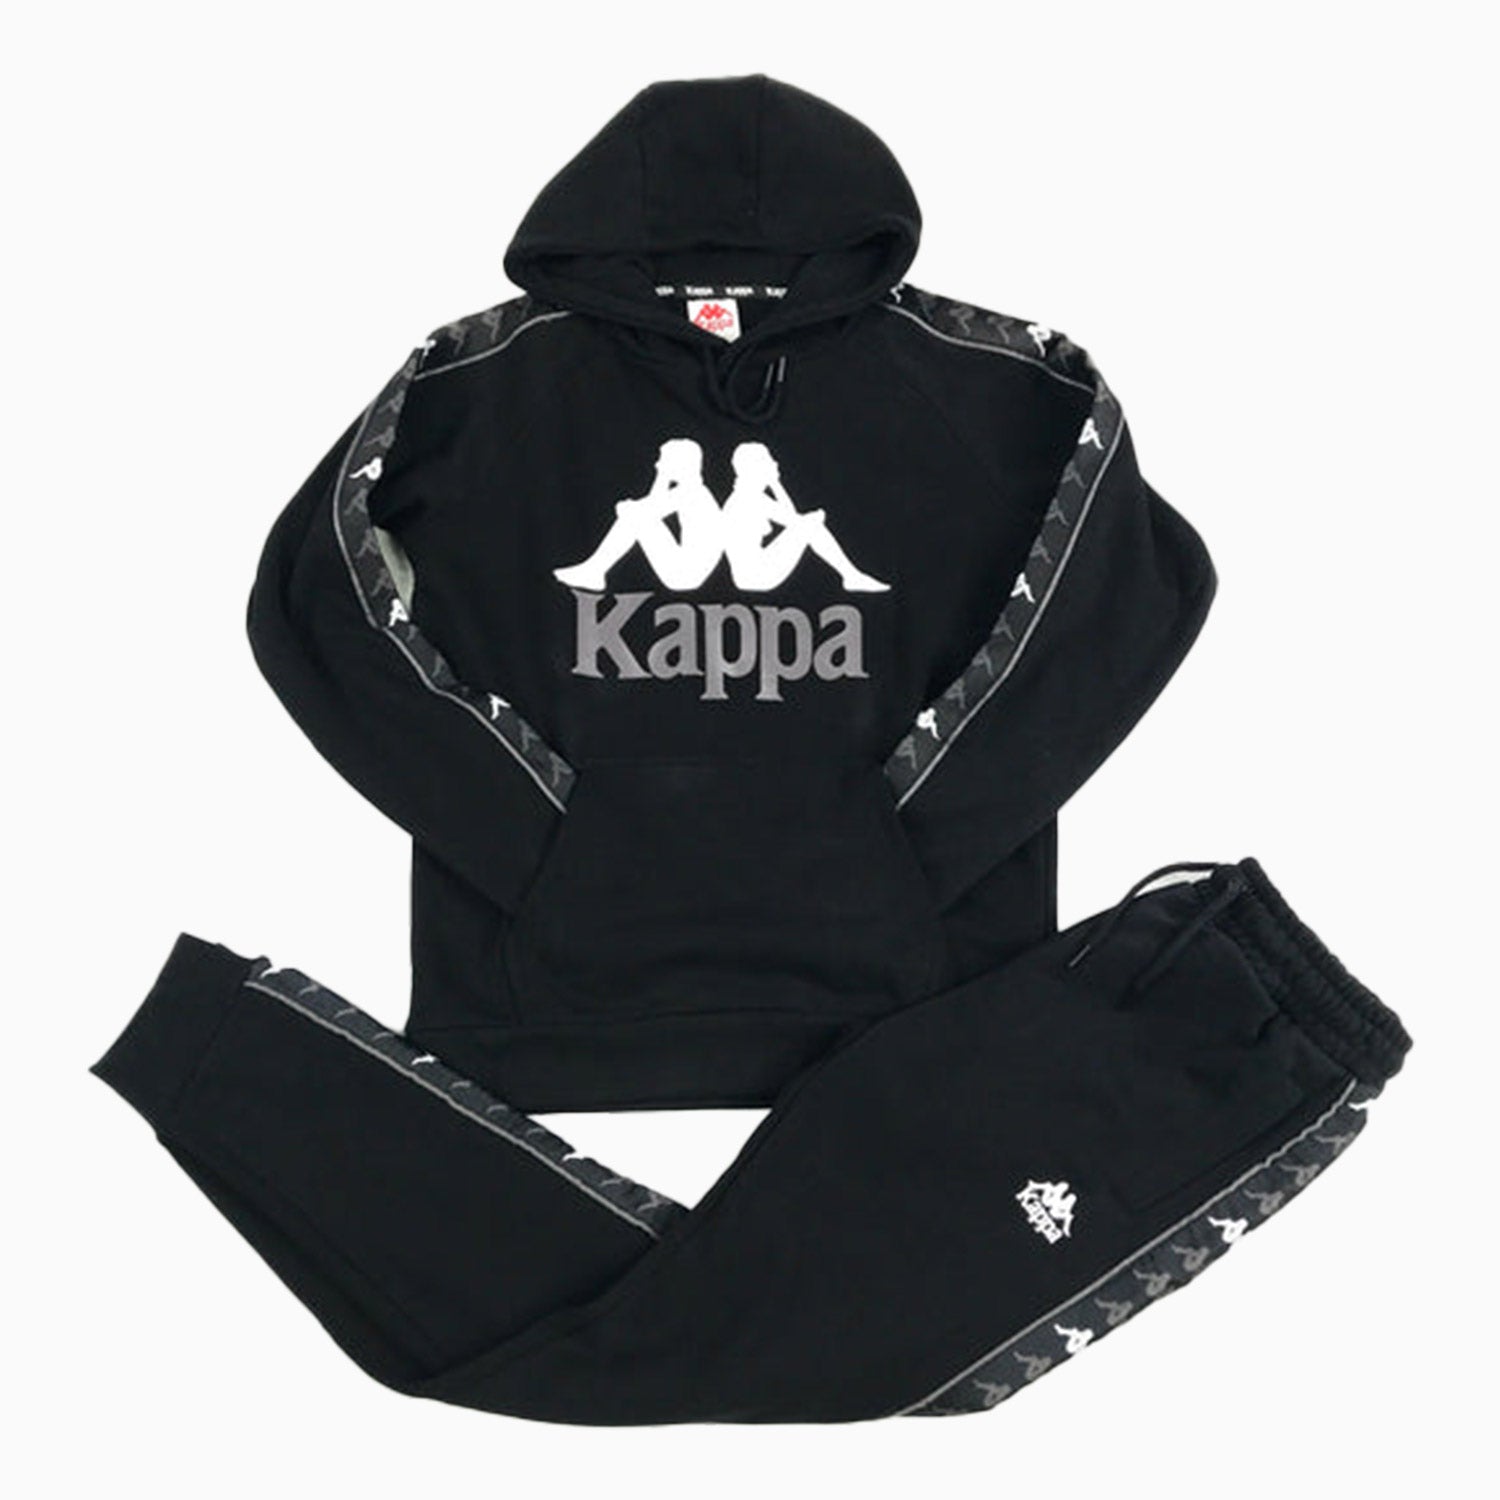 kappa-kids-222-banda-3-jogging-suit-311e1twy-a1k-36122rwy-a1k